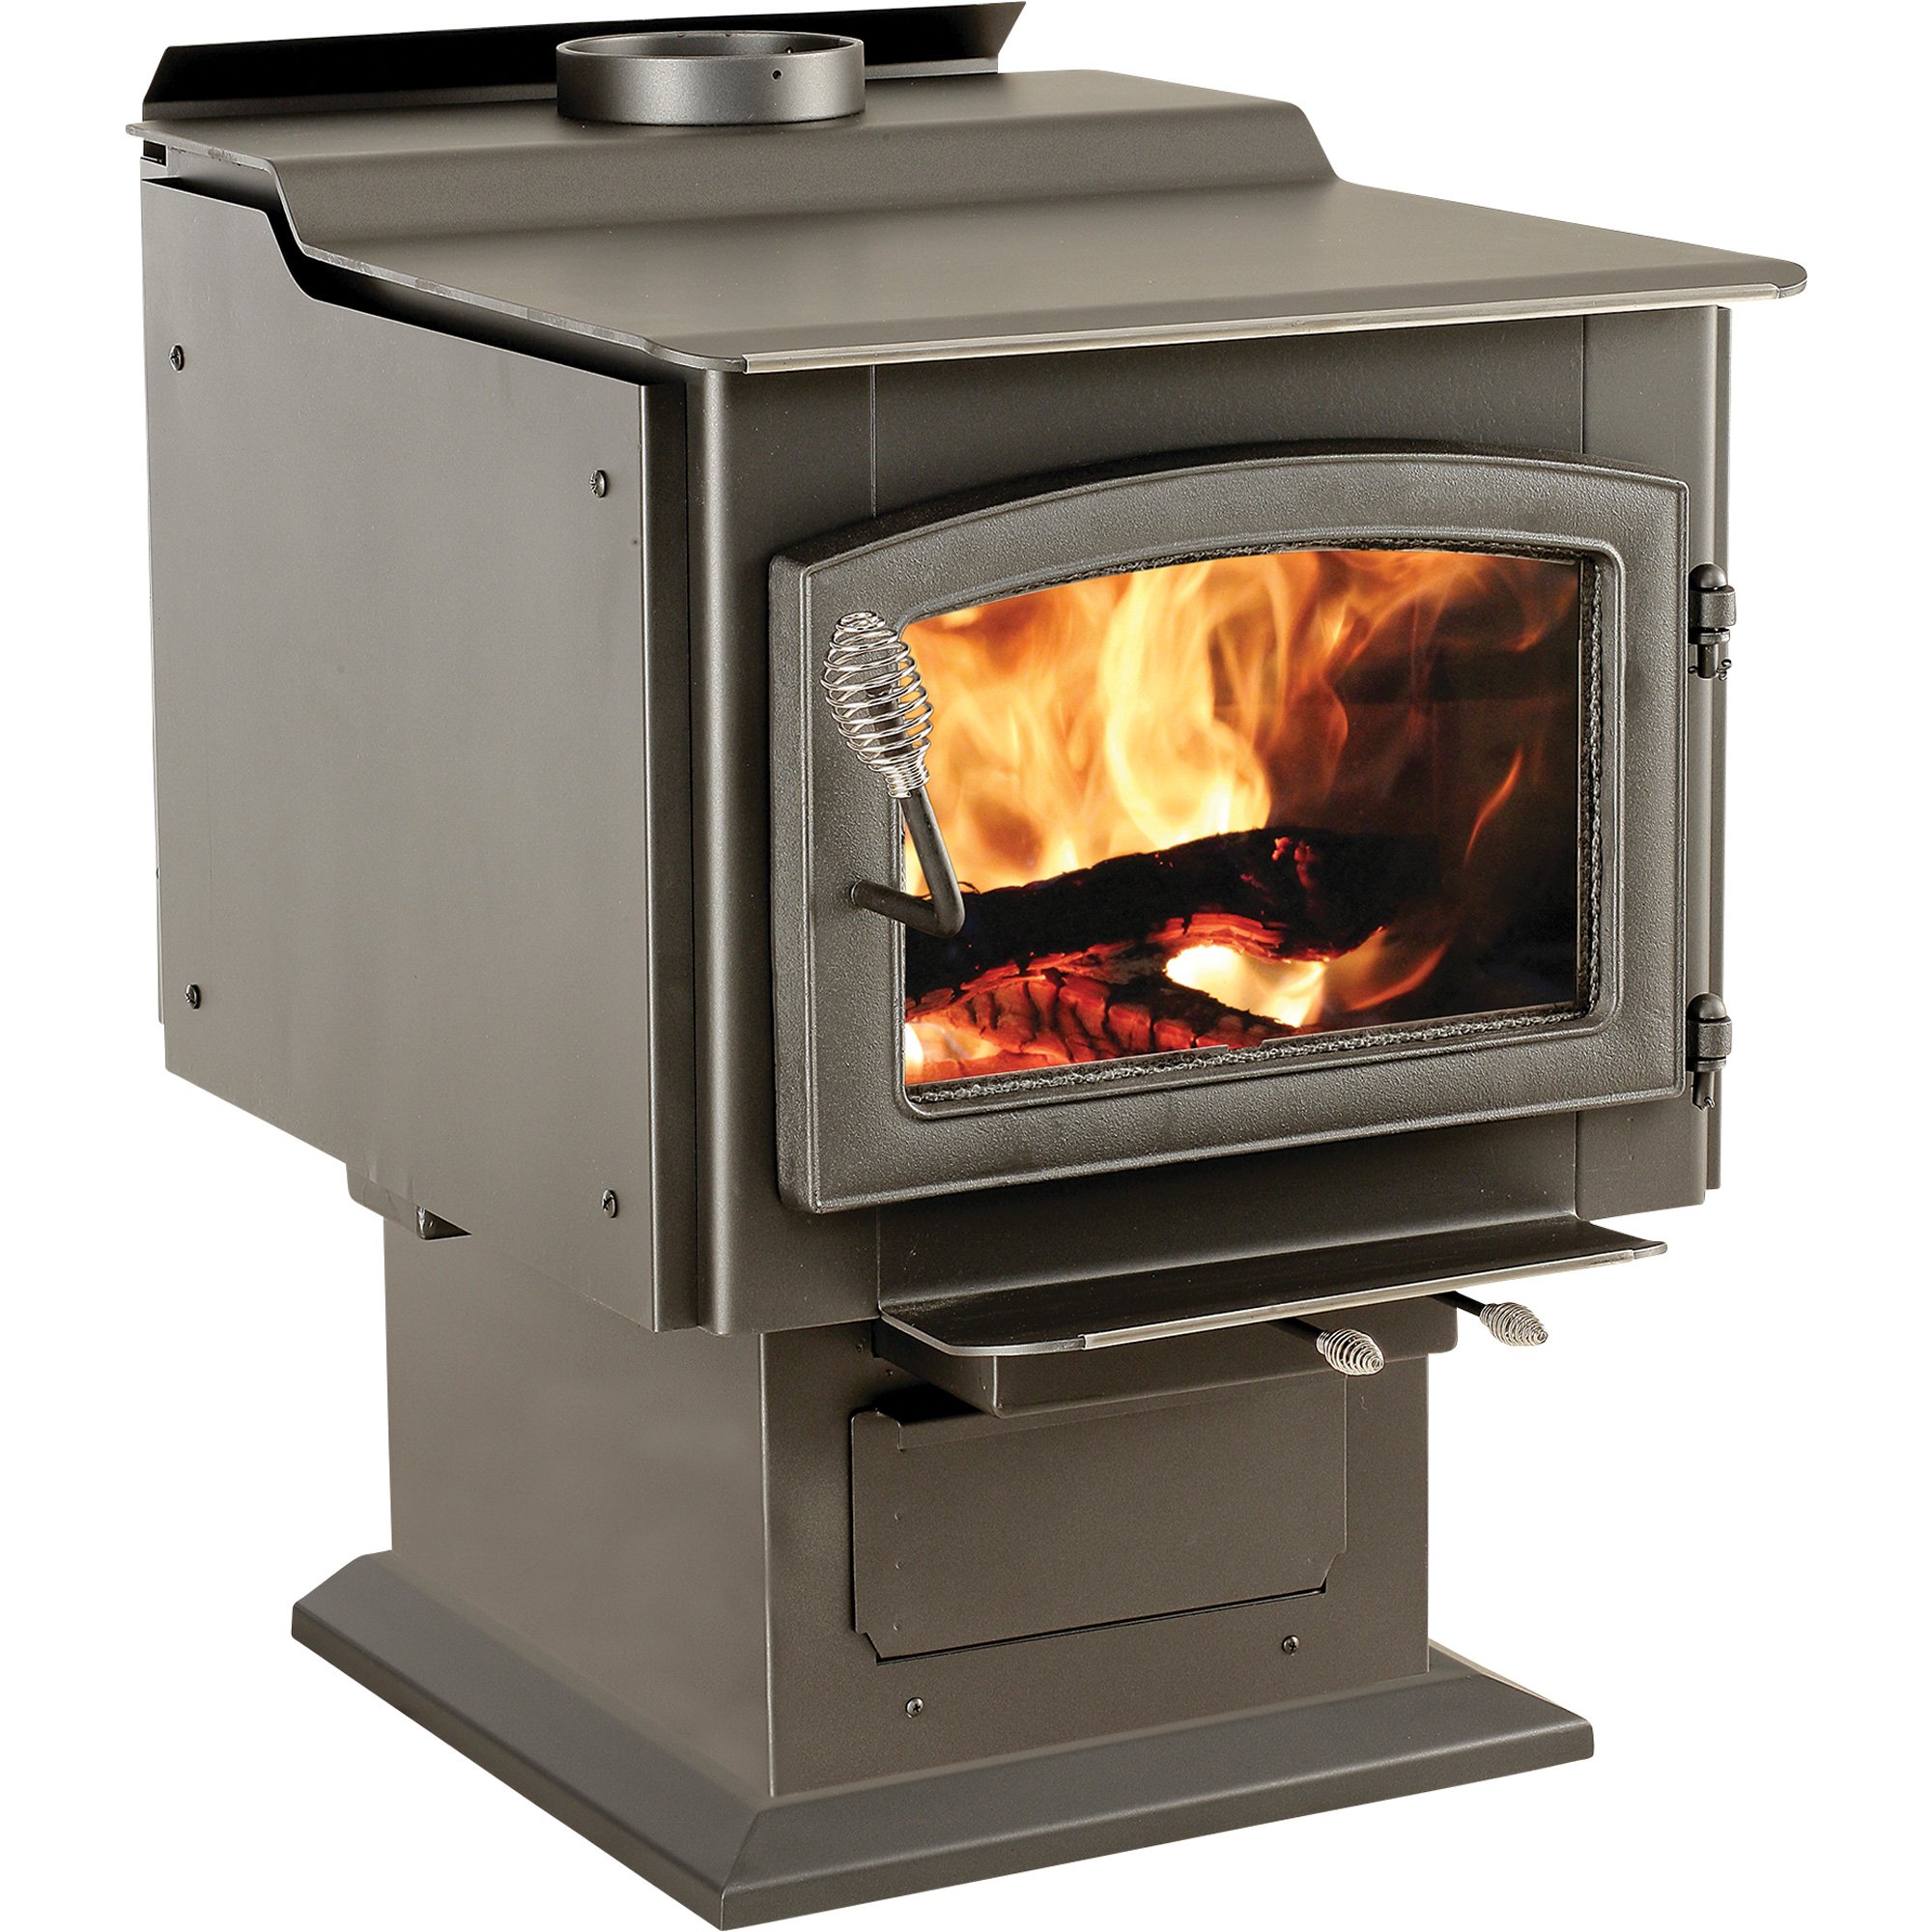 Used Wood Burning Fireplace Inserts Craigslist Best Of Wood Burning Stoves Fireplace Inserts